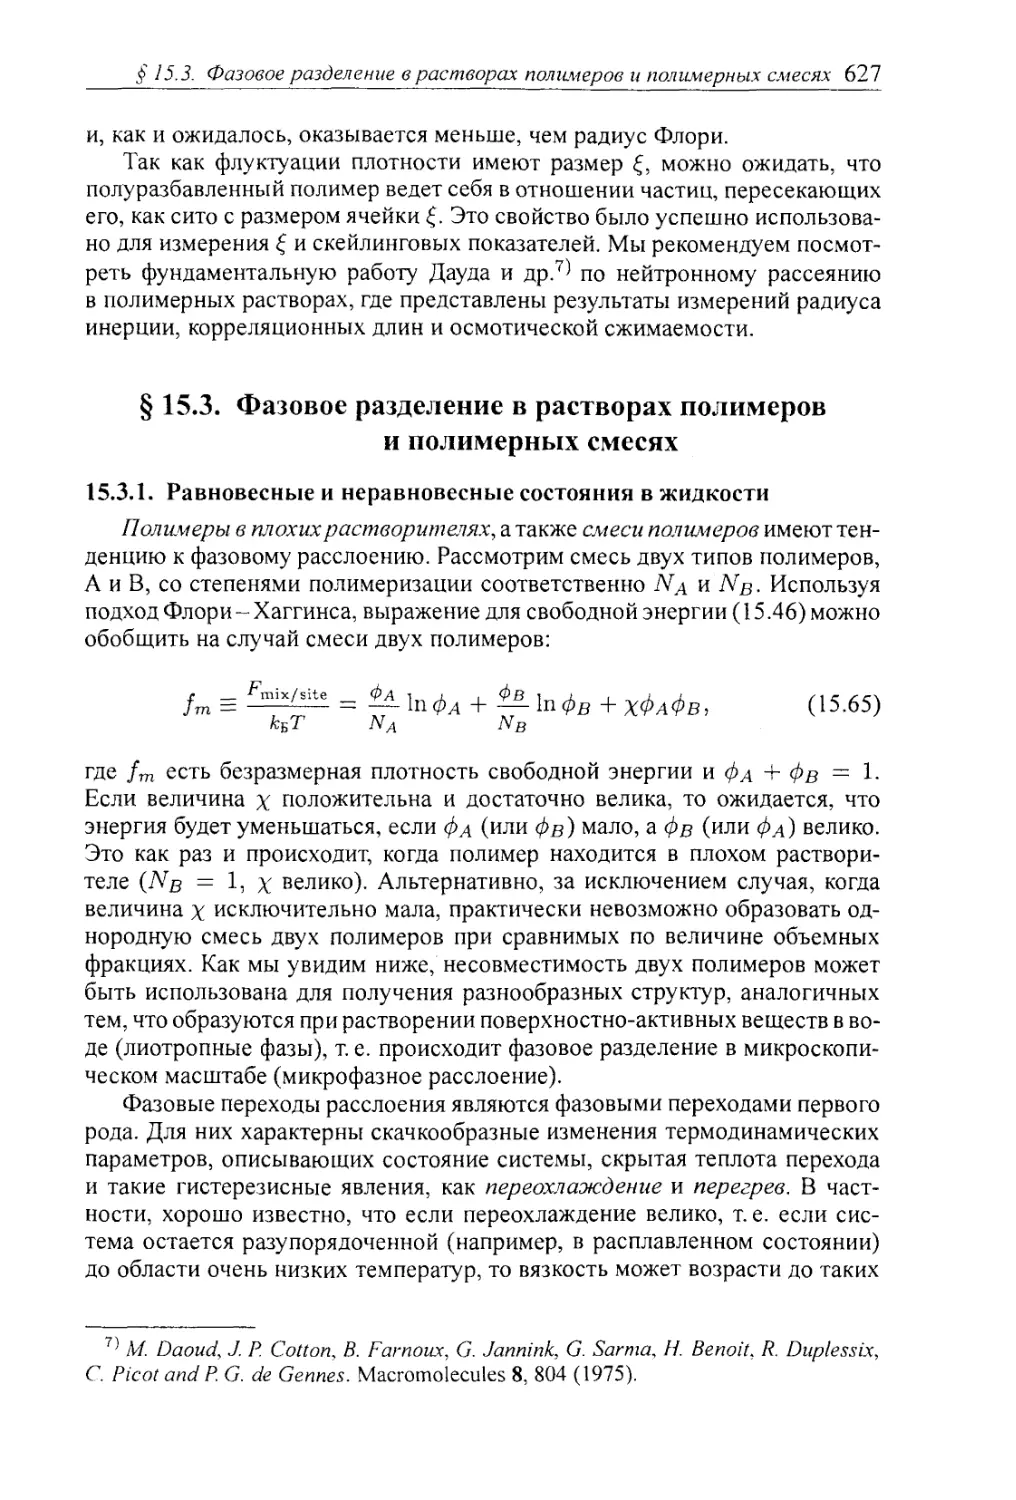 § 15.3. Фазовое разделение в растворах полимеров и полимерных смесях